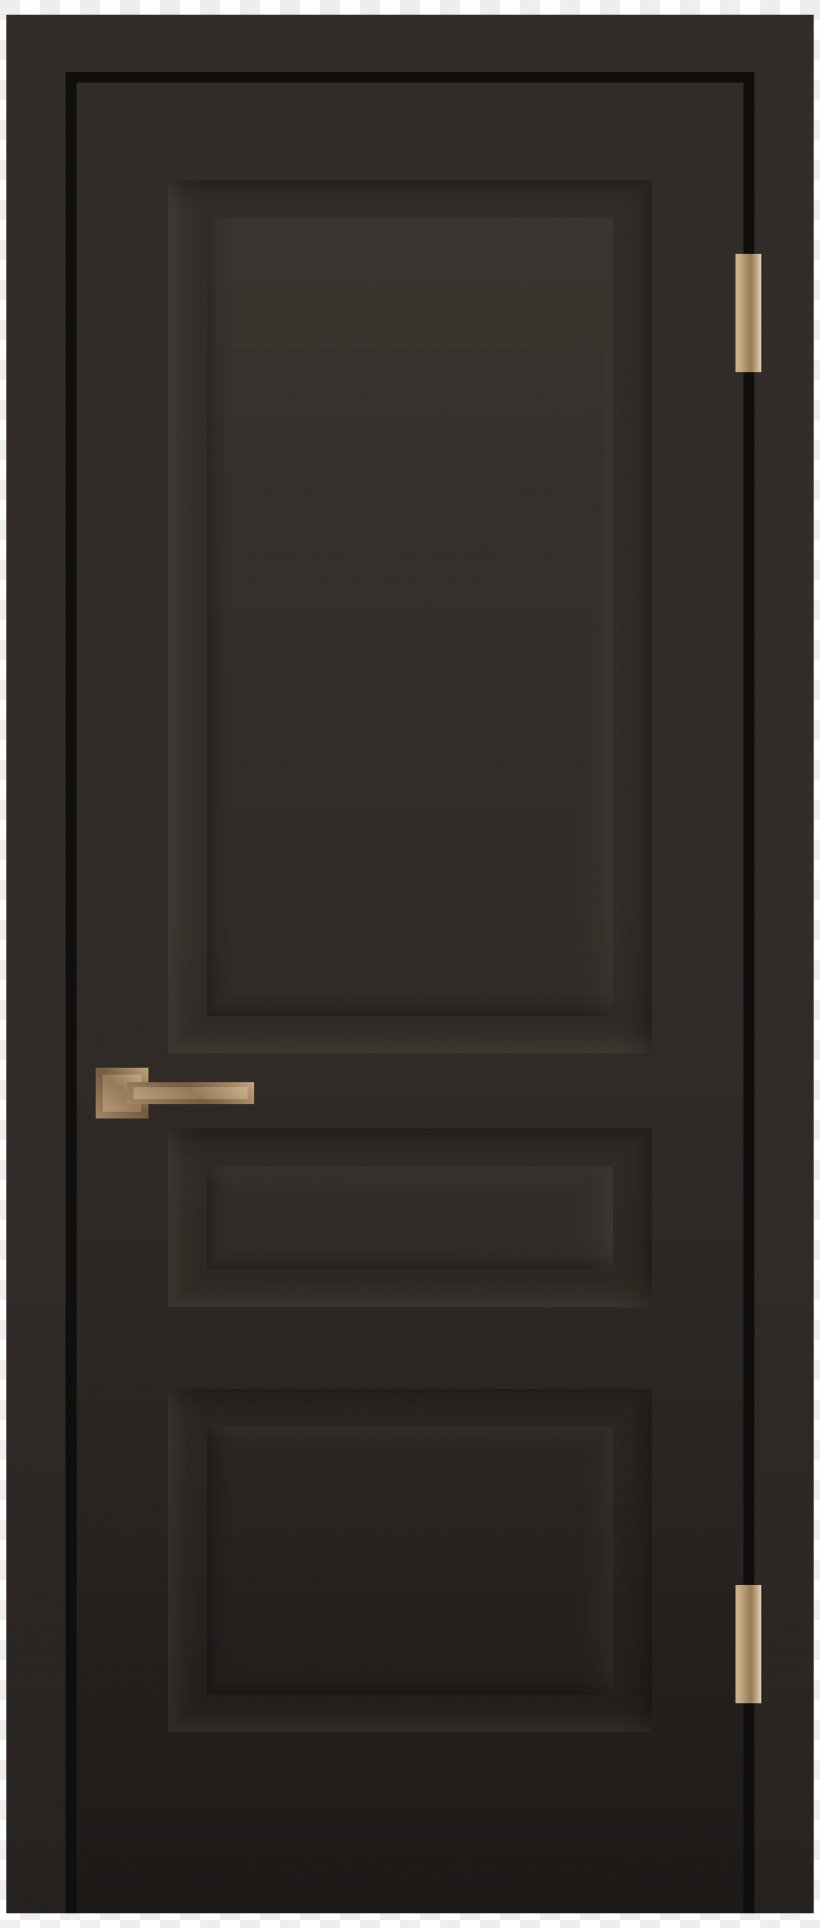 Window Sliding Glass Door Clip Art, PNG, 3401x8000px, Window, Automatic Door, Black, Door, Door Security Download Free